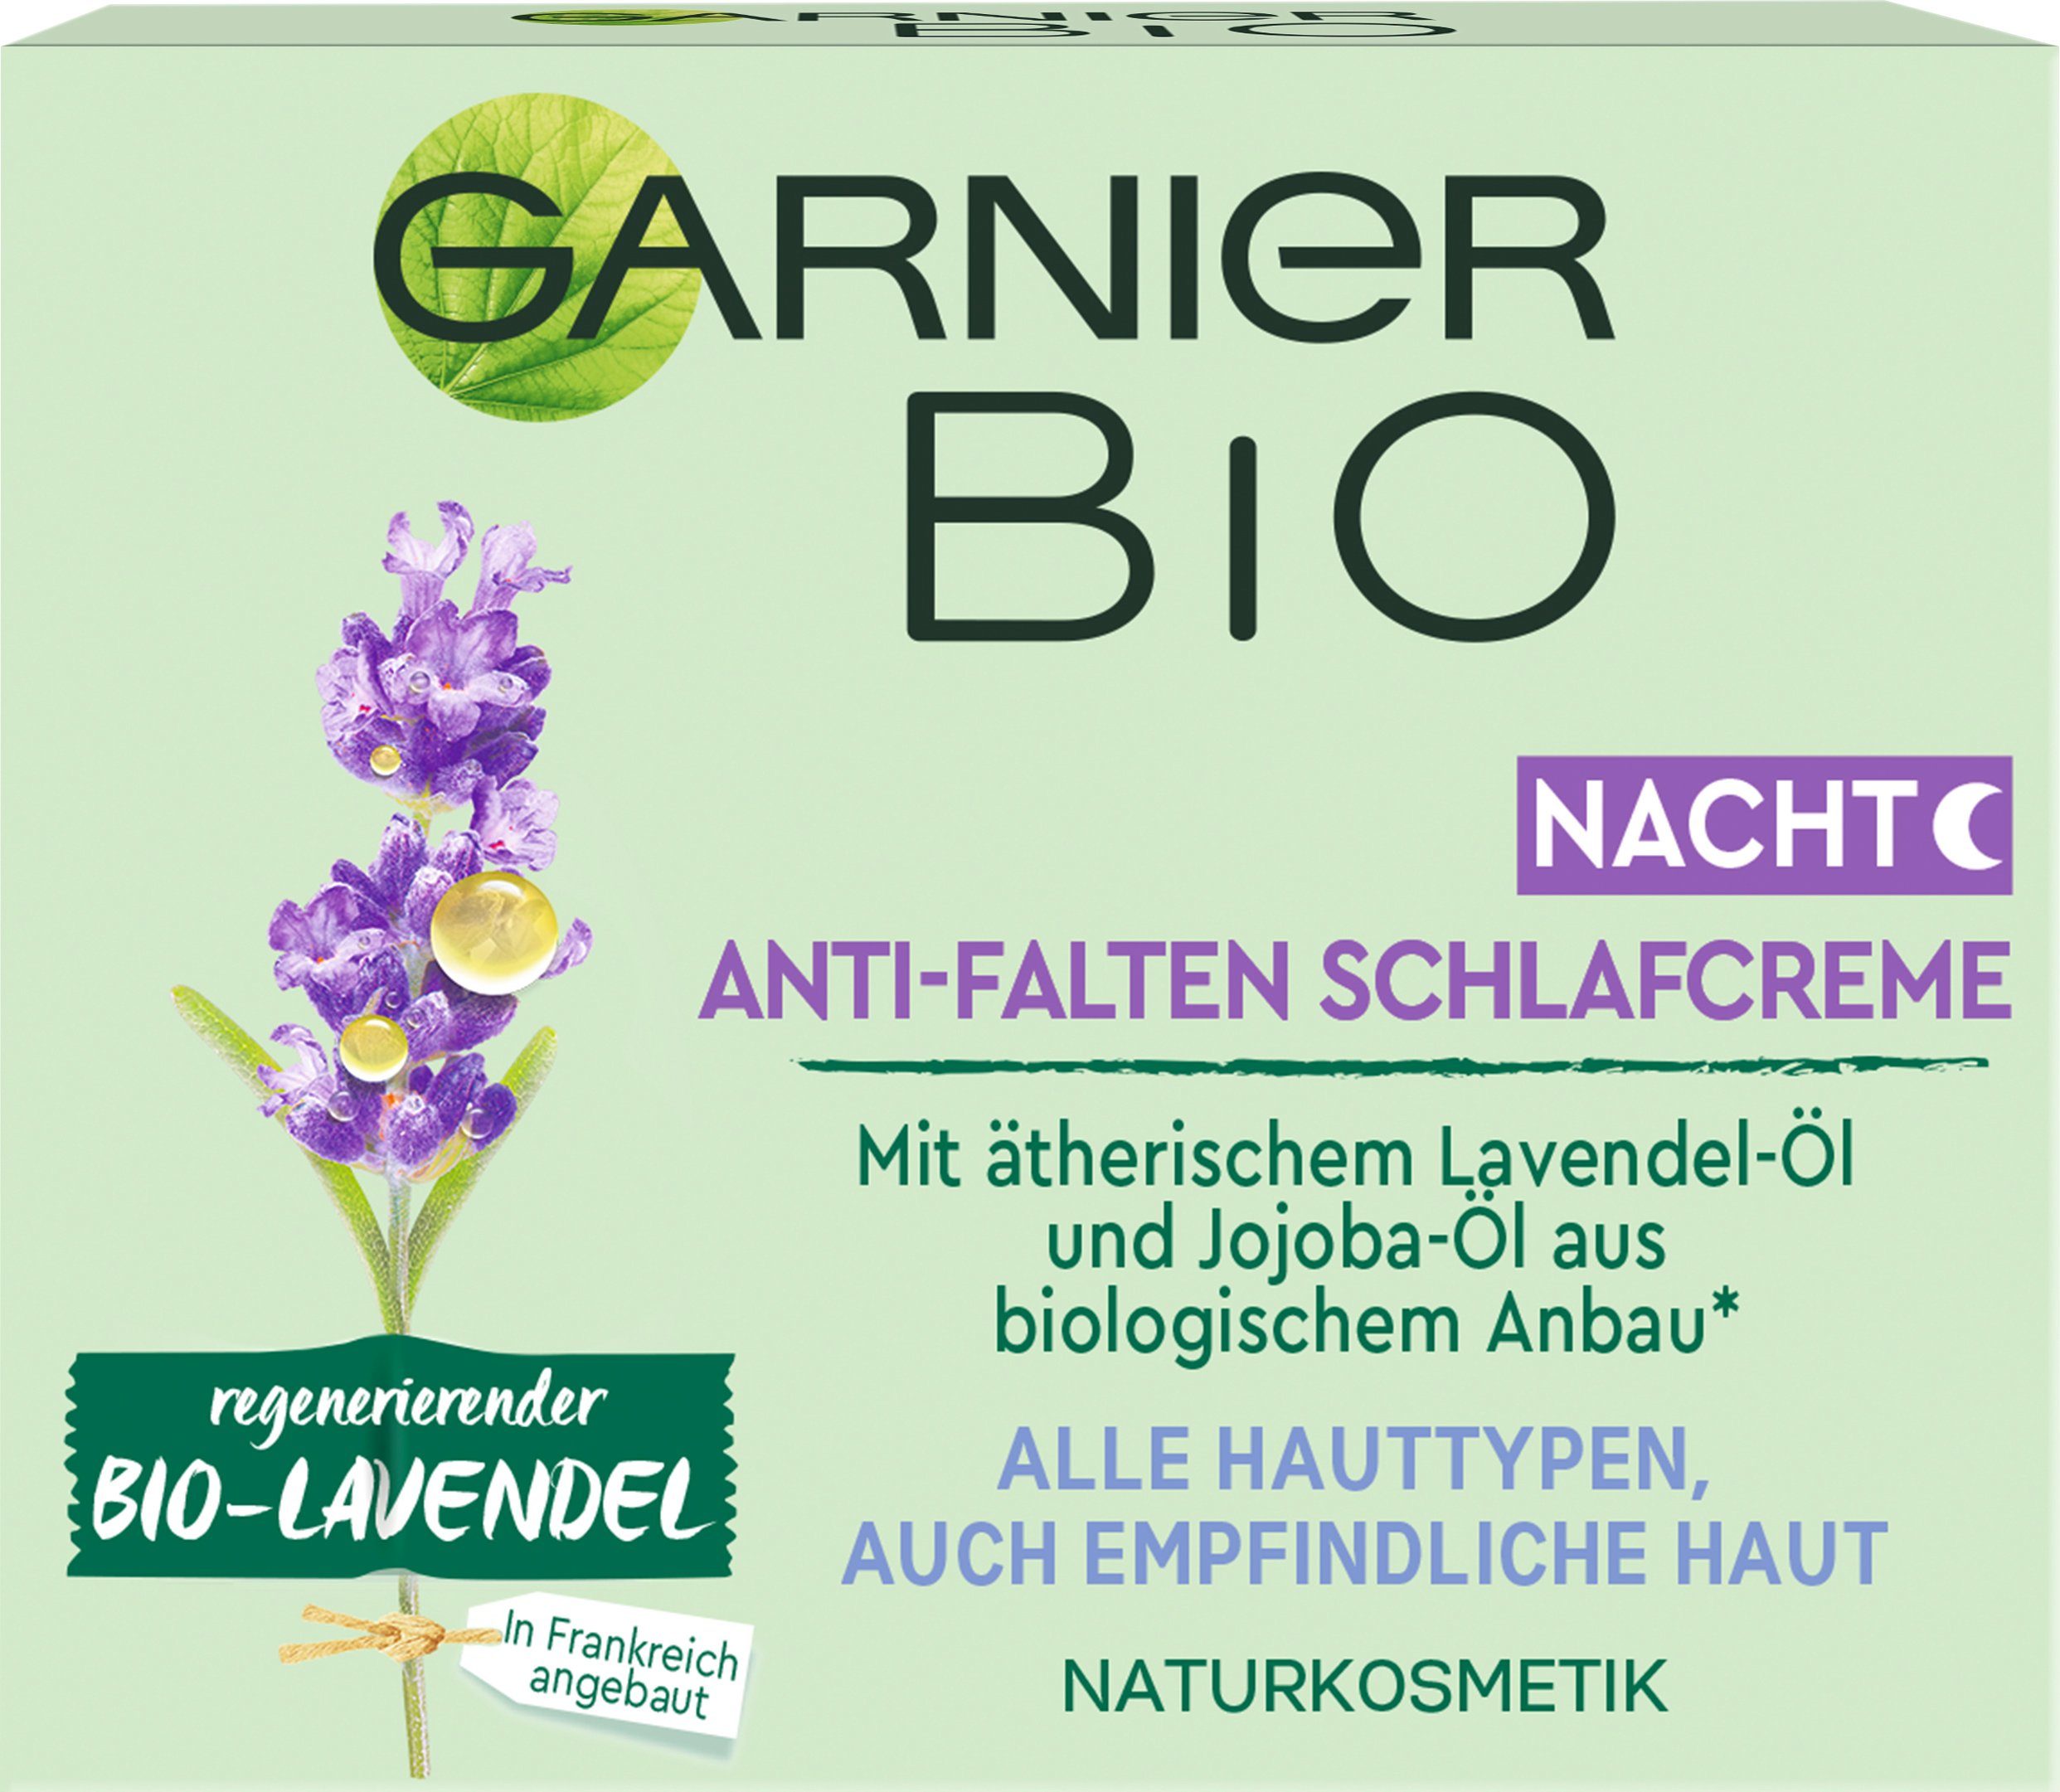 GARNIER Anti-Falten Schlafcreme Bio-Lavendel Nachtcreme regenerierender